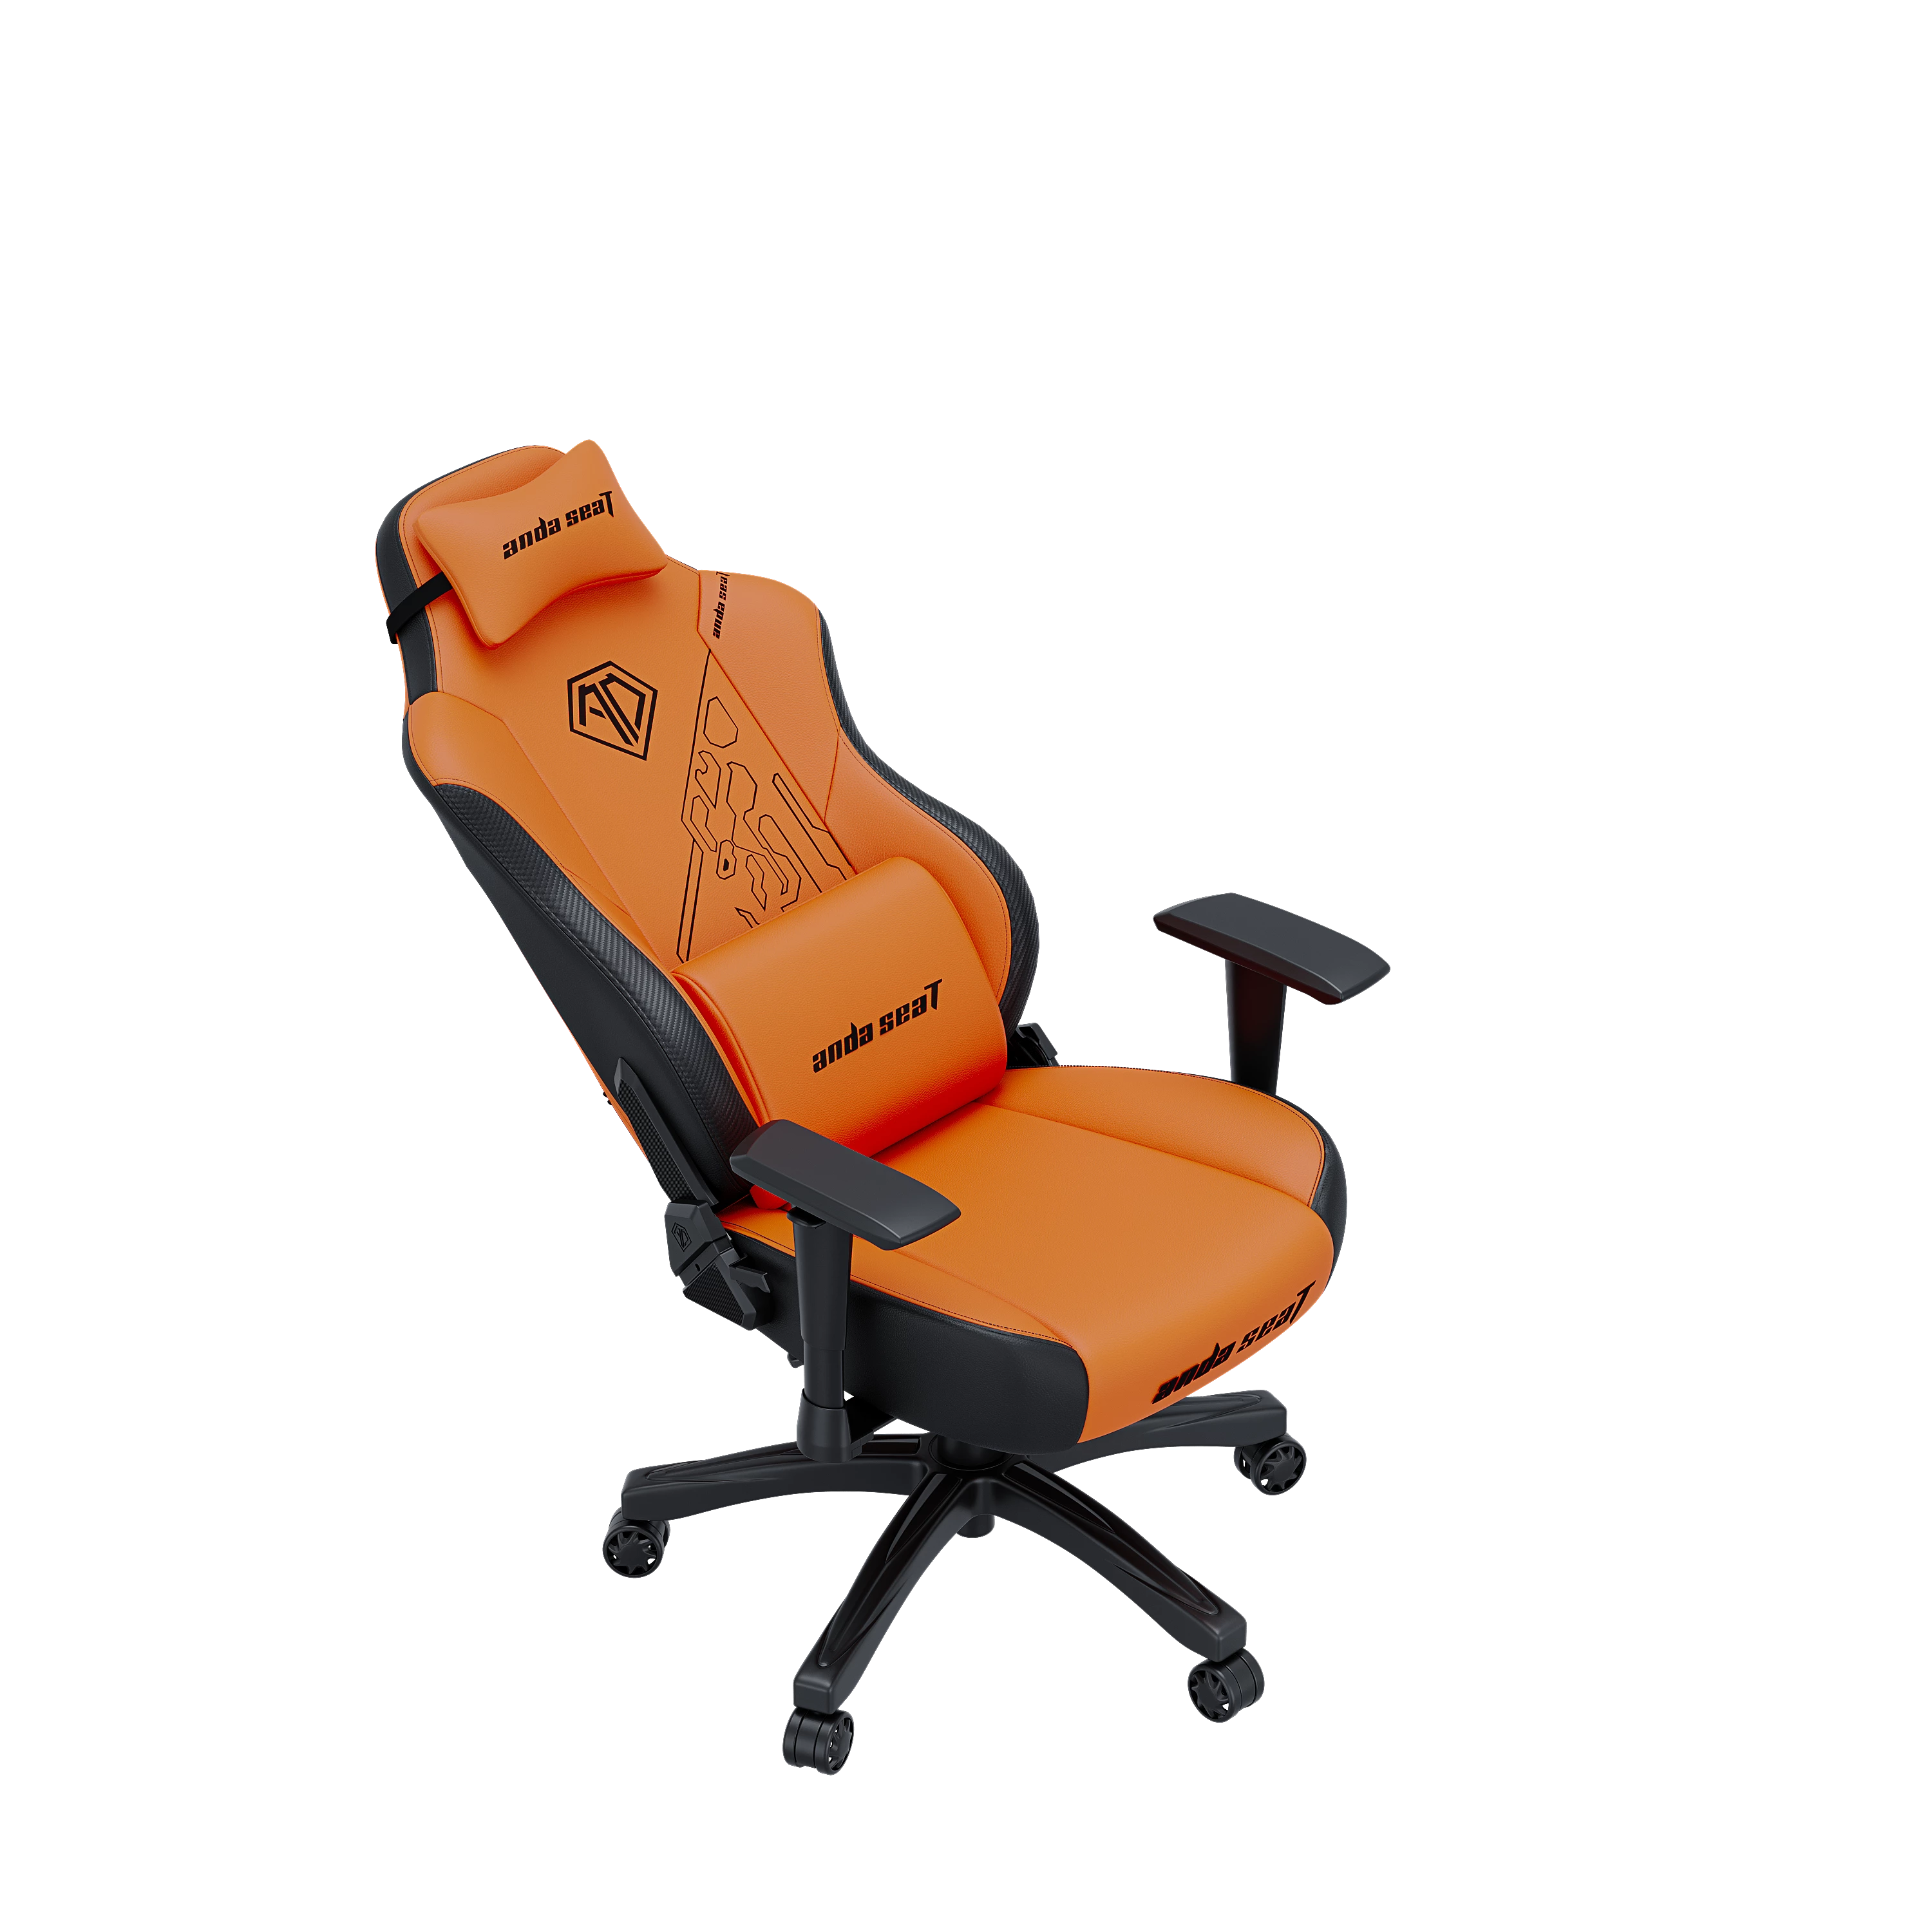 Игровое кресло Anda Seat Phantom 3 Tiger Edition Orange Size L (AD18Y-14-OB-PV/C) - фото 6